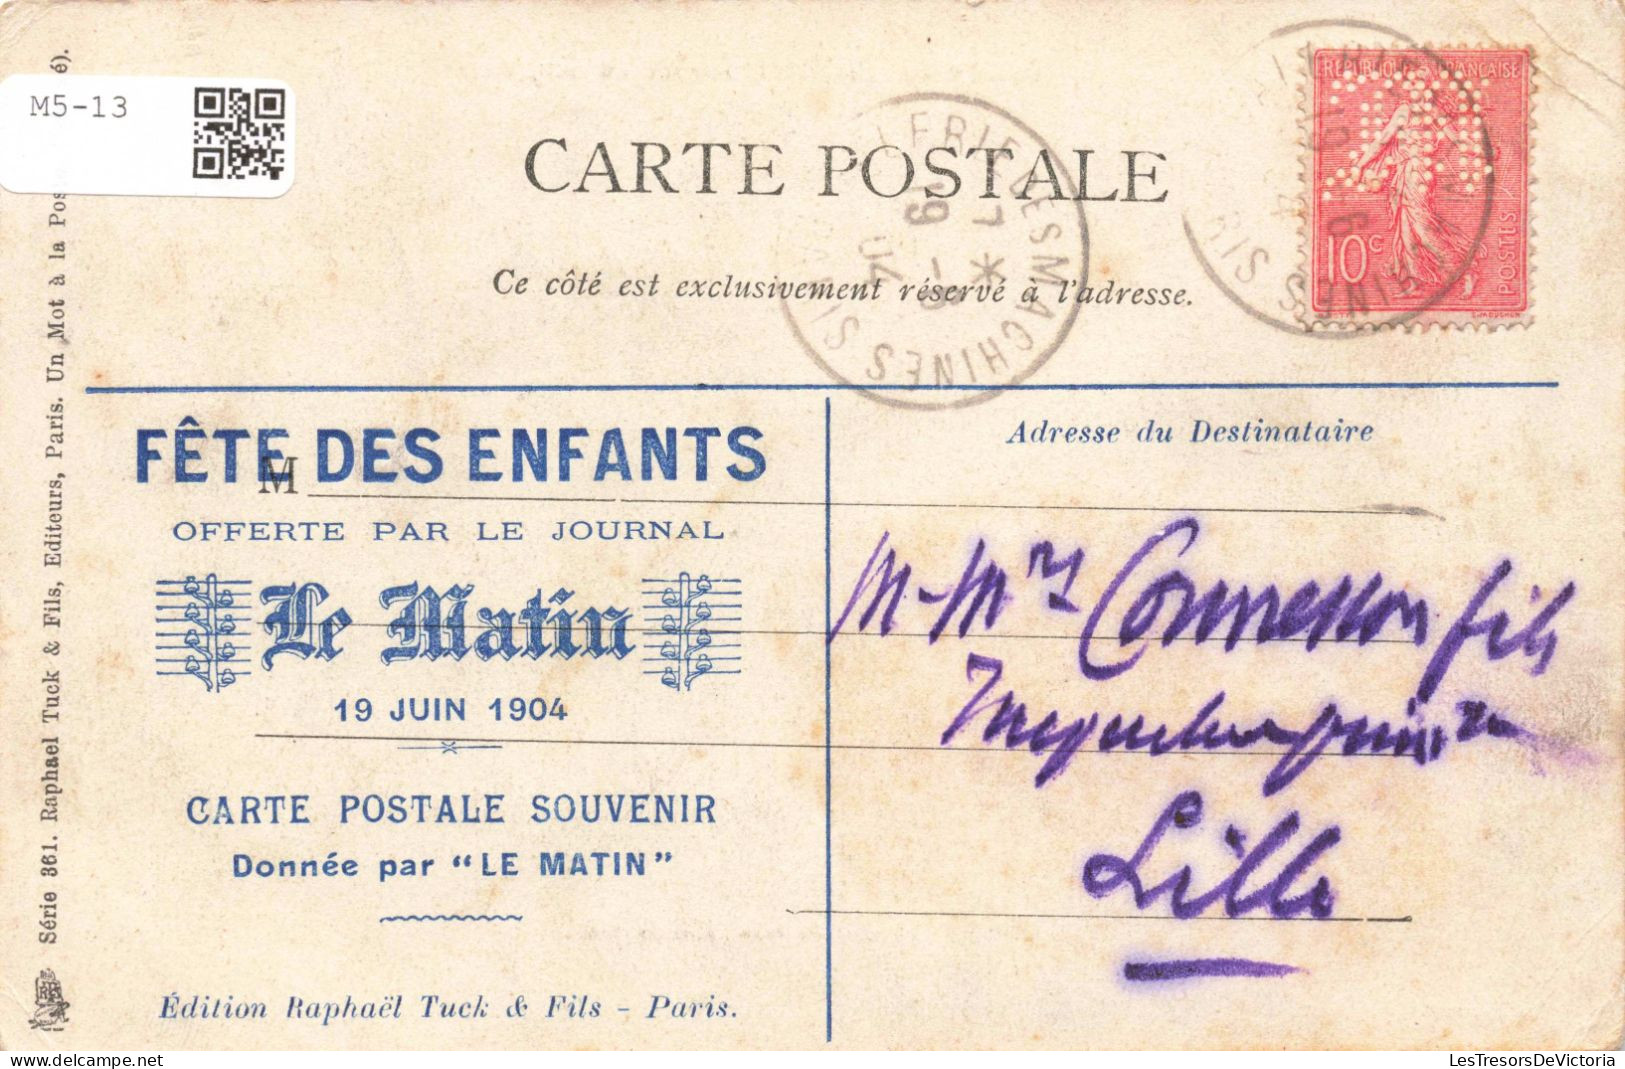 ALGERIE - Voyage Du Président - Carte Postale Ancienne - Mannen